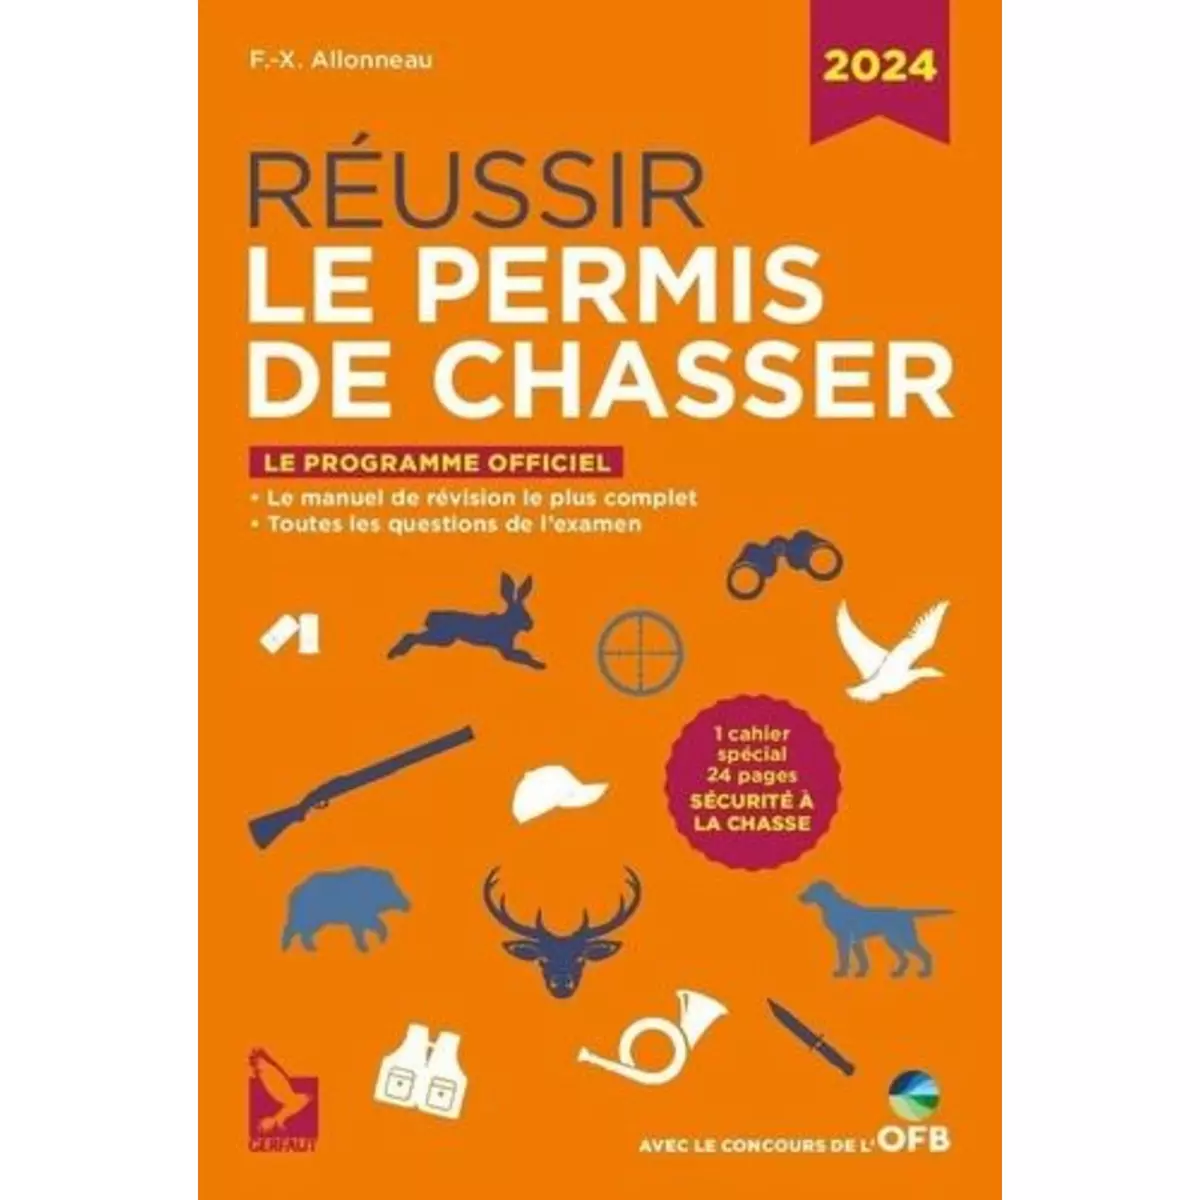  REUSSIR LE PERMIS DE CHASSER. EDITION 2024, Alloneau François-Xavier